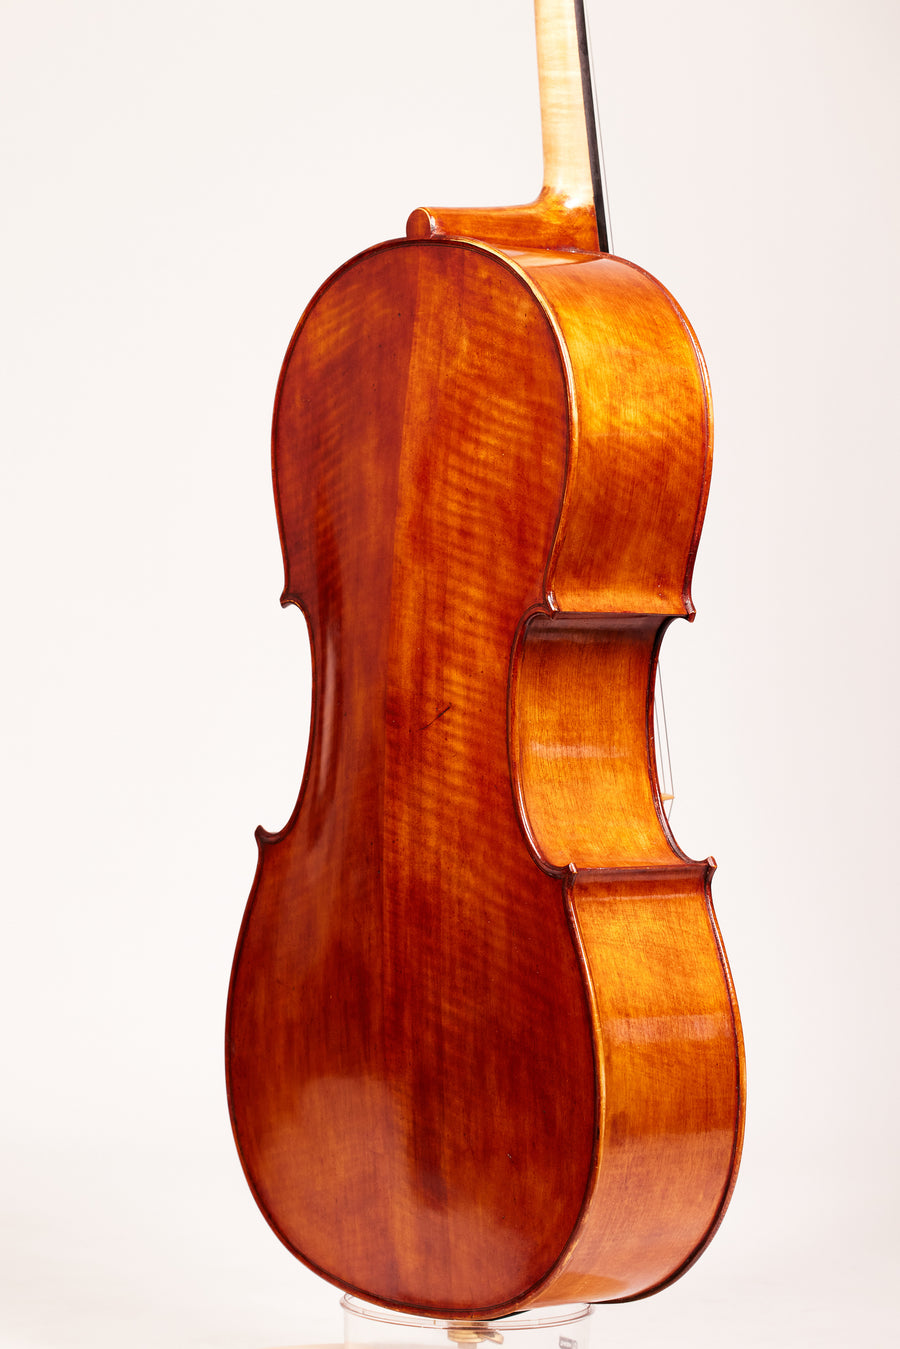 A Cello By Martin Sheridan, 2007